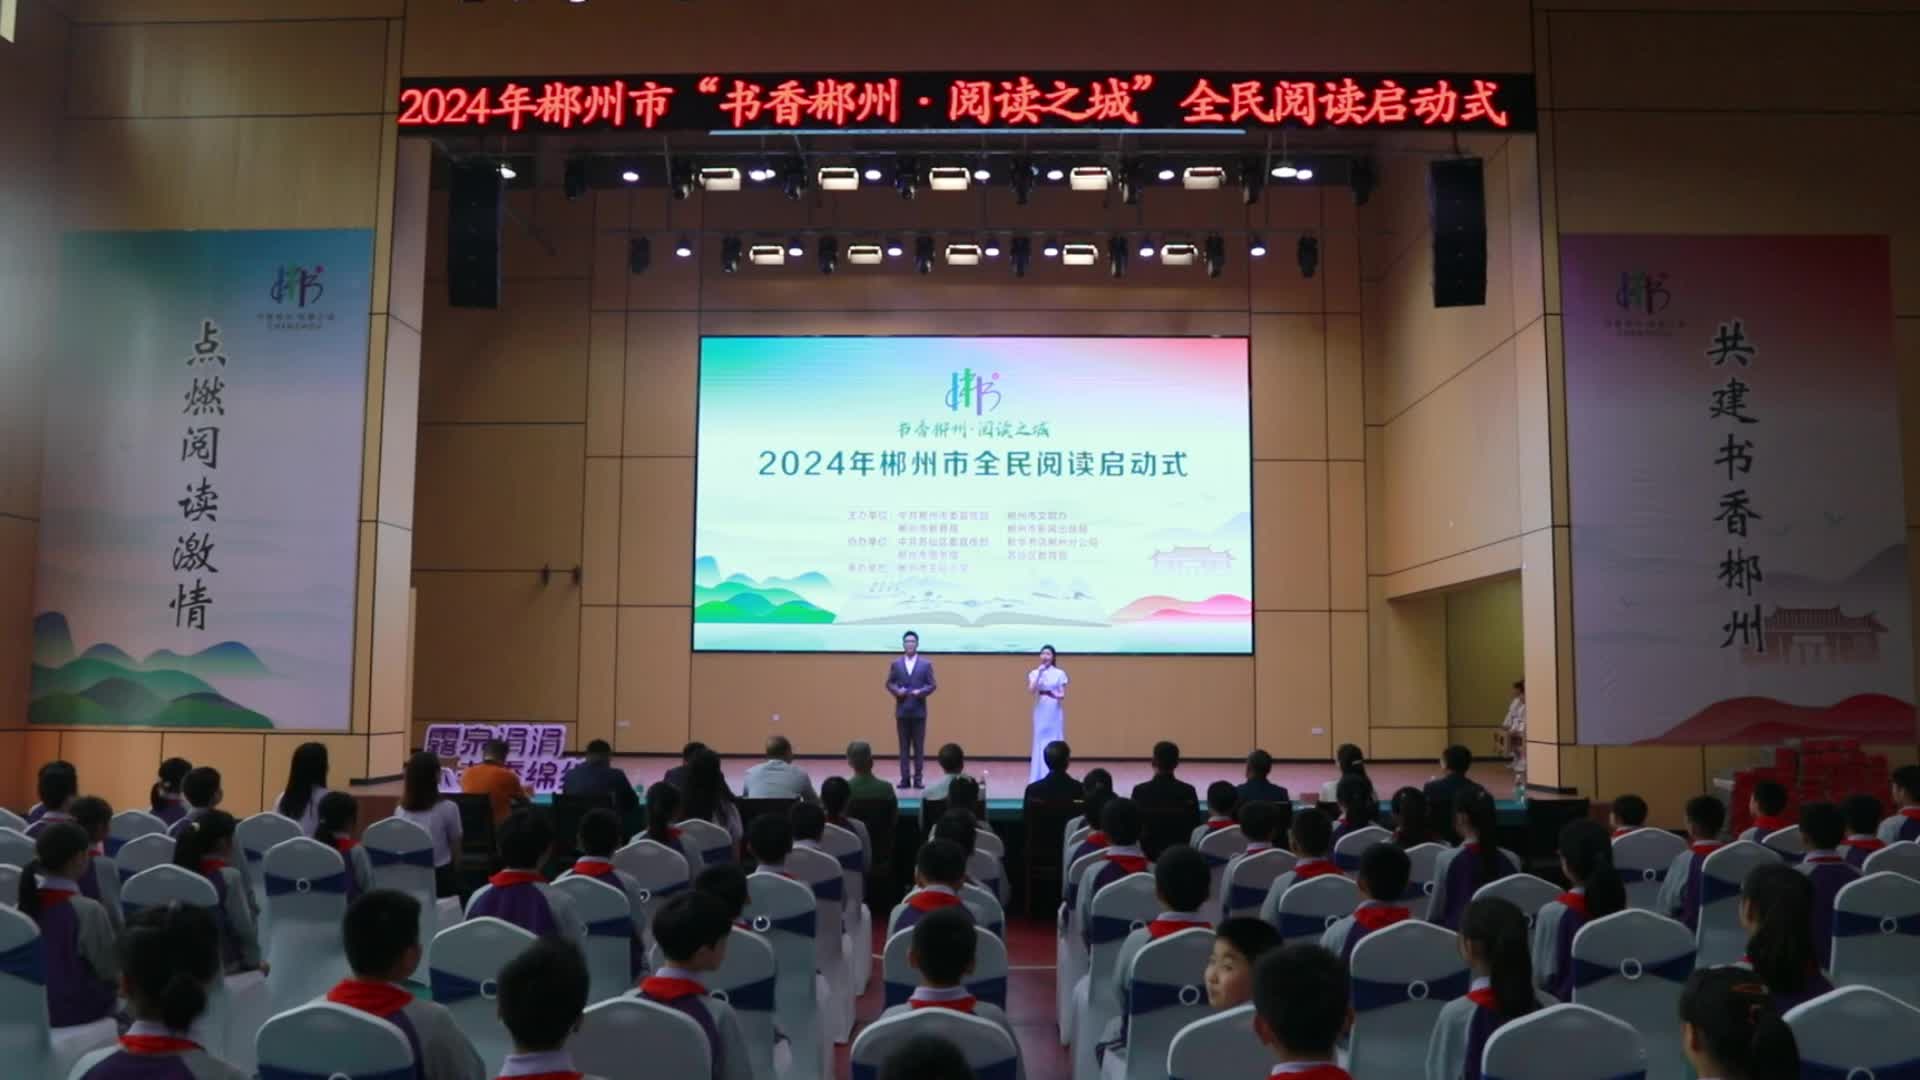 视频丨郴州市“书香郴州·阅读之城”全民阅读启动